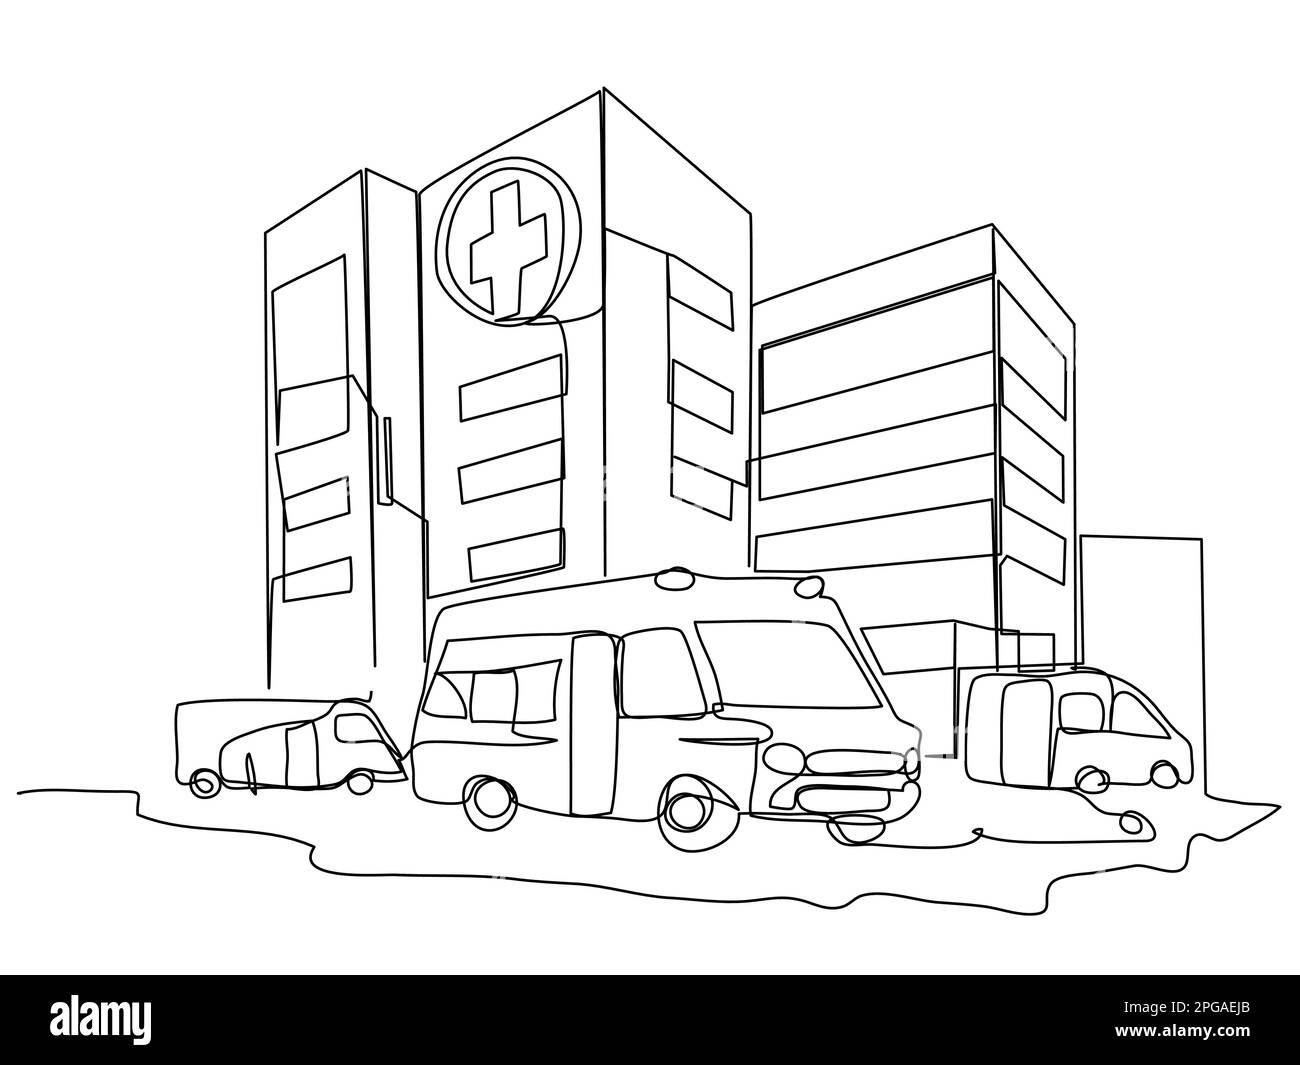 Semplice ospedale con edifici e ambulanze in una linea su uno sfondo bianco. Immagine concettuale della clinica. Illustrazione vettoriale stock con editab Illustrazione Vettoriale